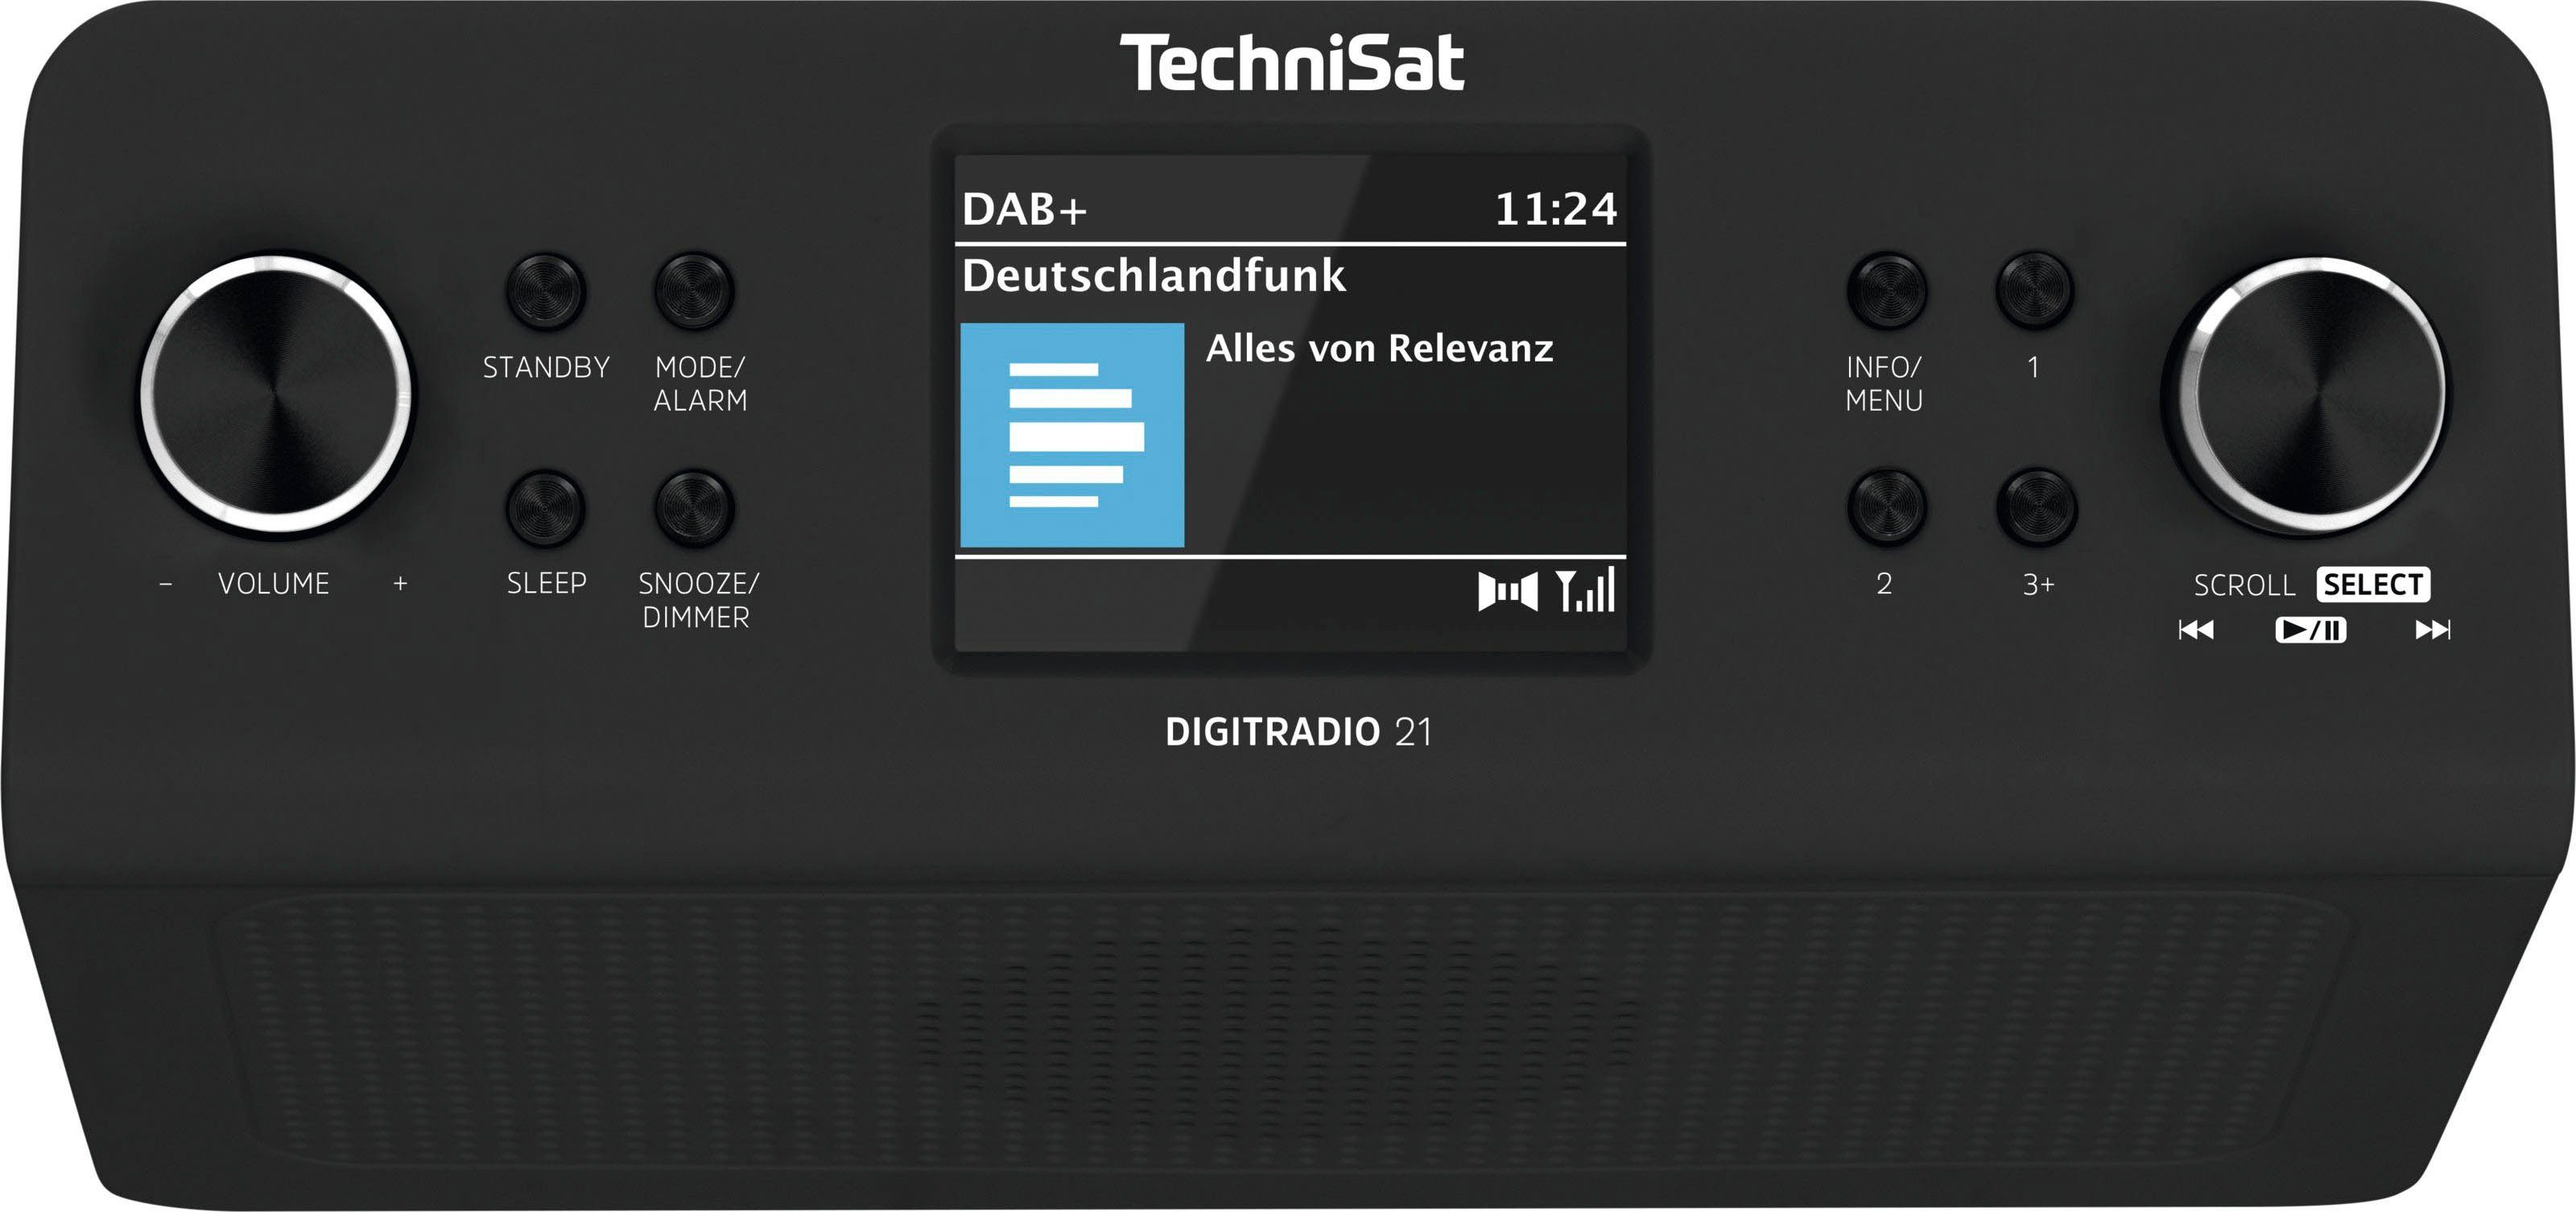 schwarz RDS, W, Küchen-Radio DIGITRADIO UKW mit Unterbau-Radio,Küchen-Radio) (Digitalradio 21 TechniSat (DAB), 2